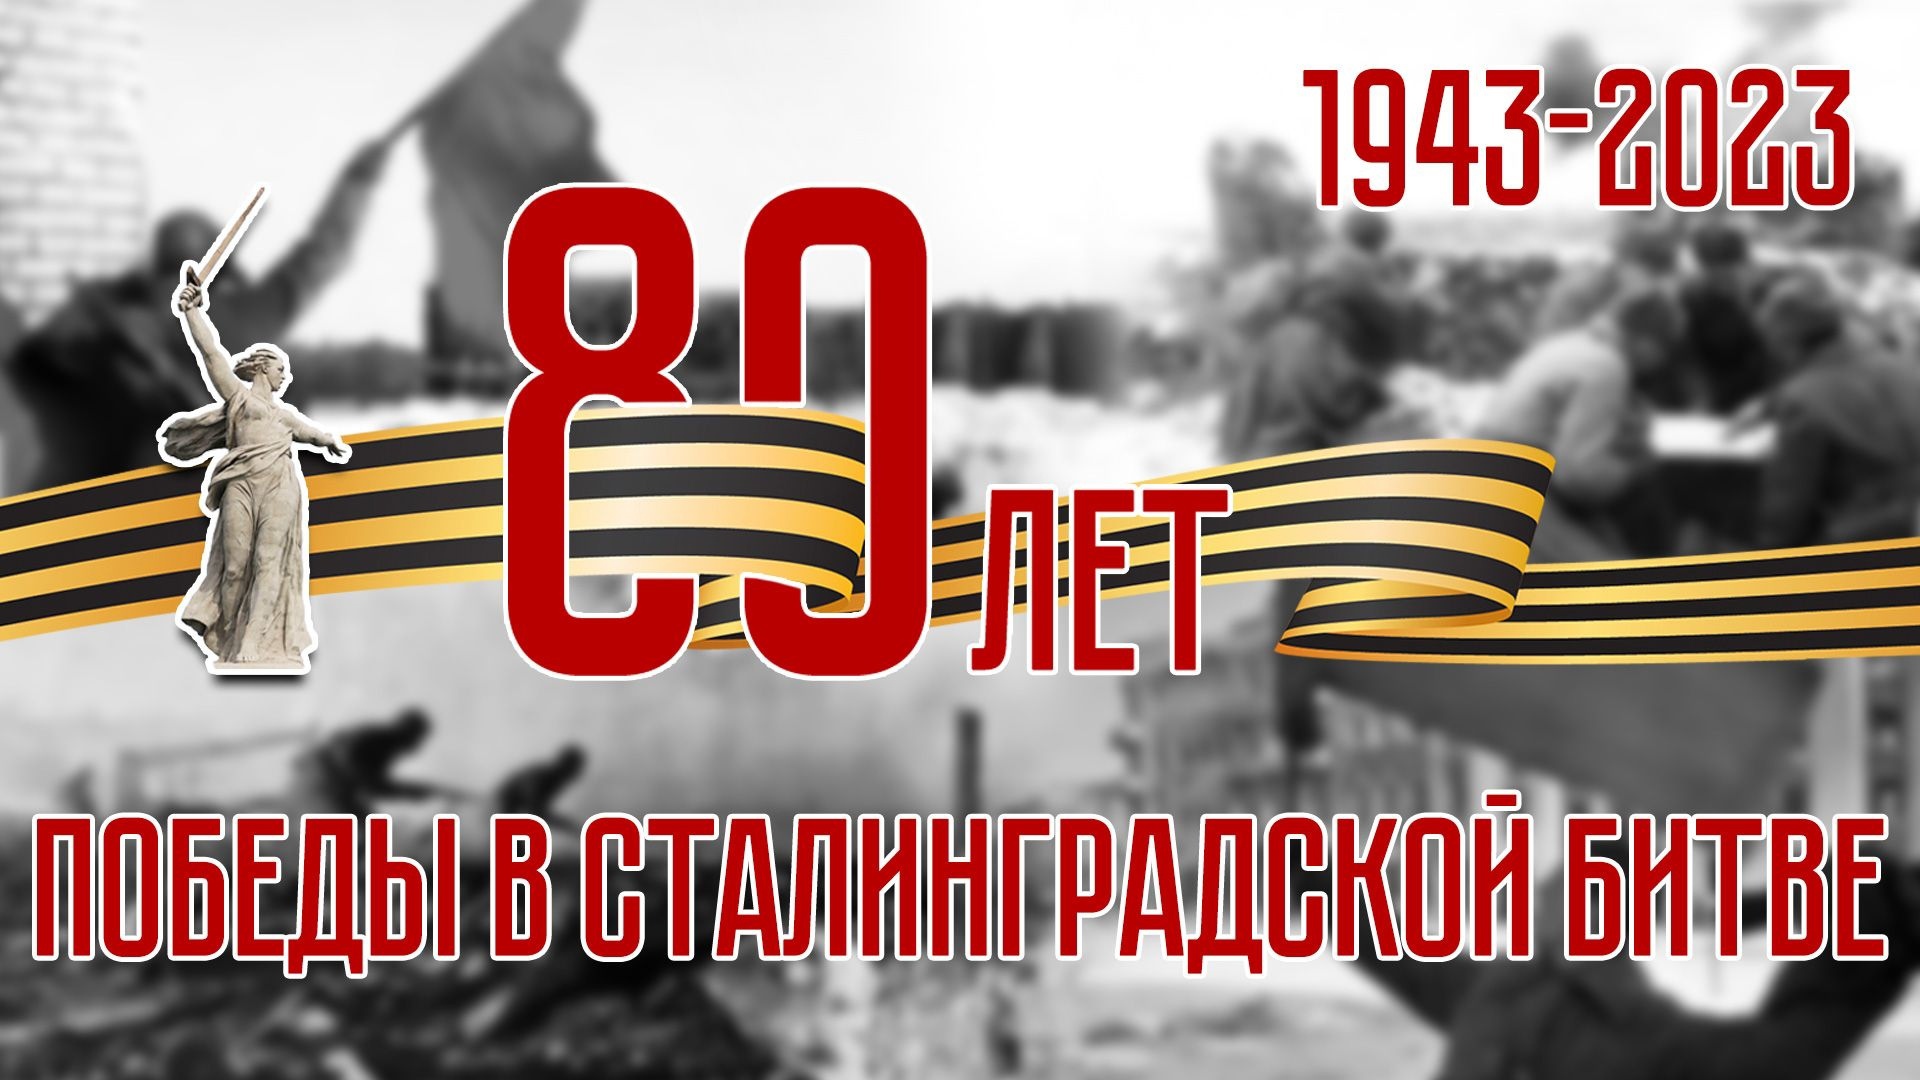 80 лет назад закончилось крупнейшее генеральное сражение Великой Отечественной войны - Сталинградская битва!.